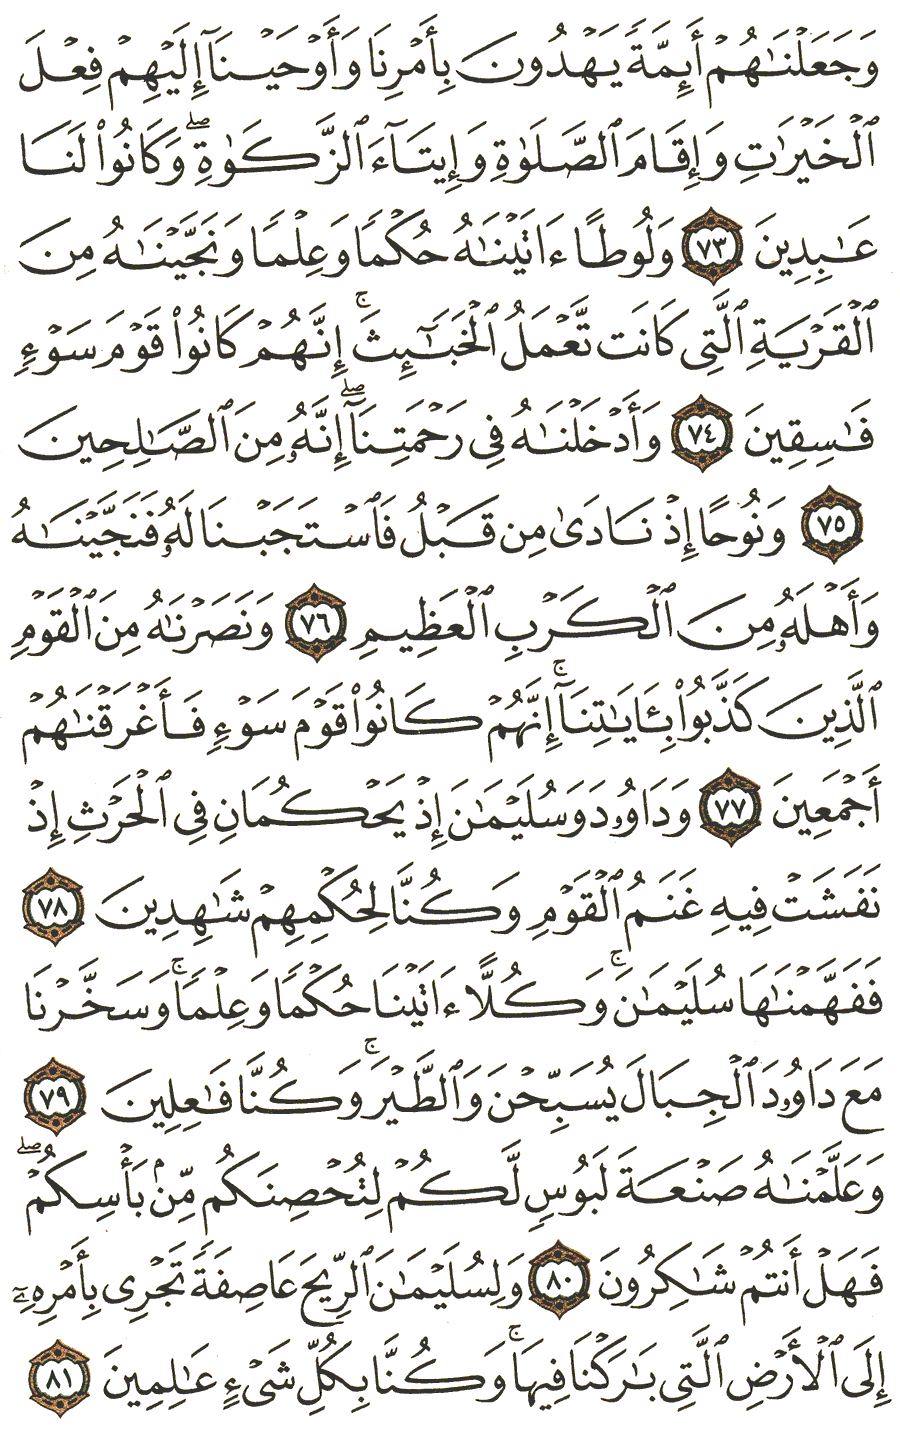 الصفحة رقم 328  من القرآن الكريم مكتوبة من المصحف